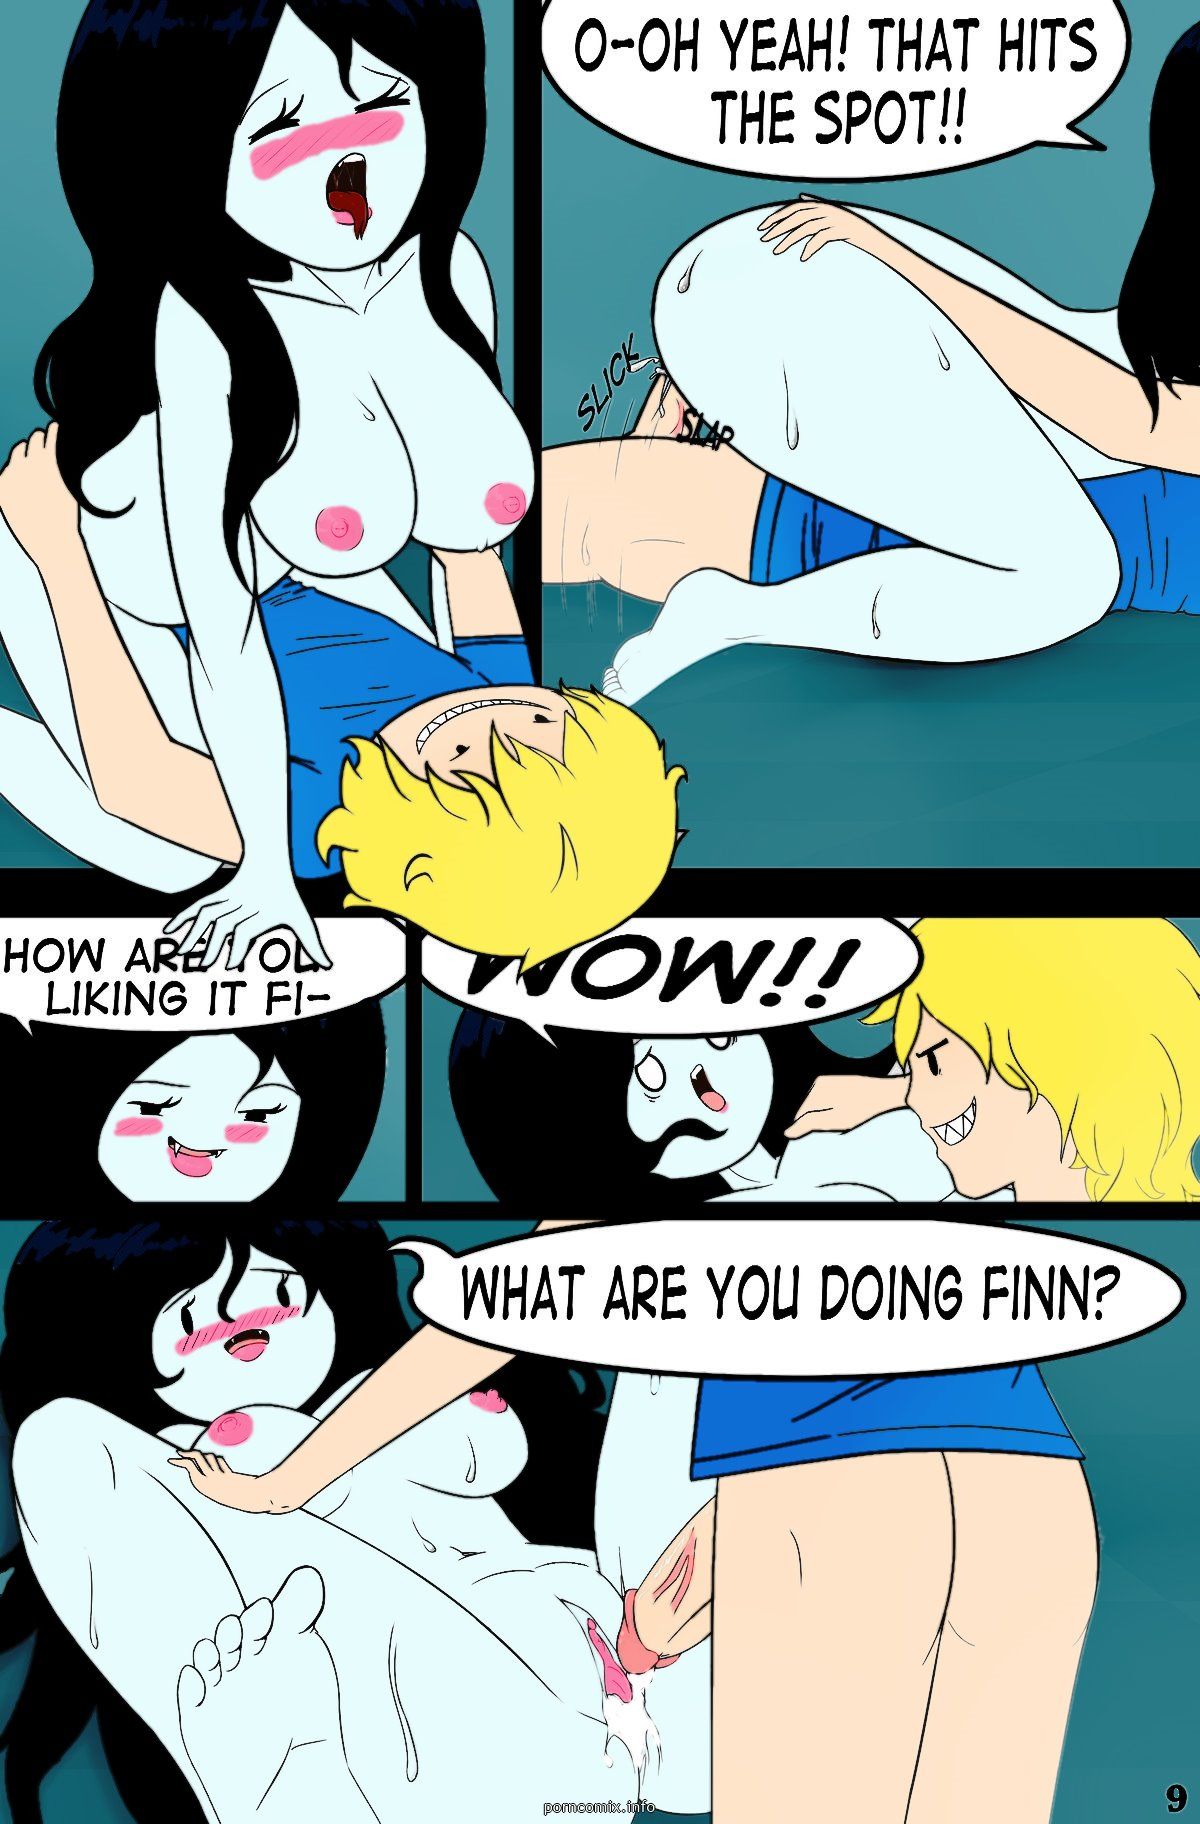 Mis Adventure Time 1- Marceline’s Closet page 1